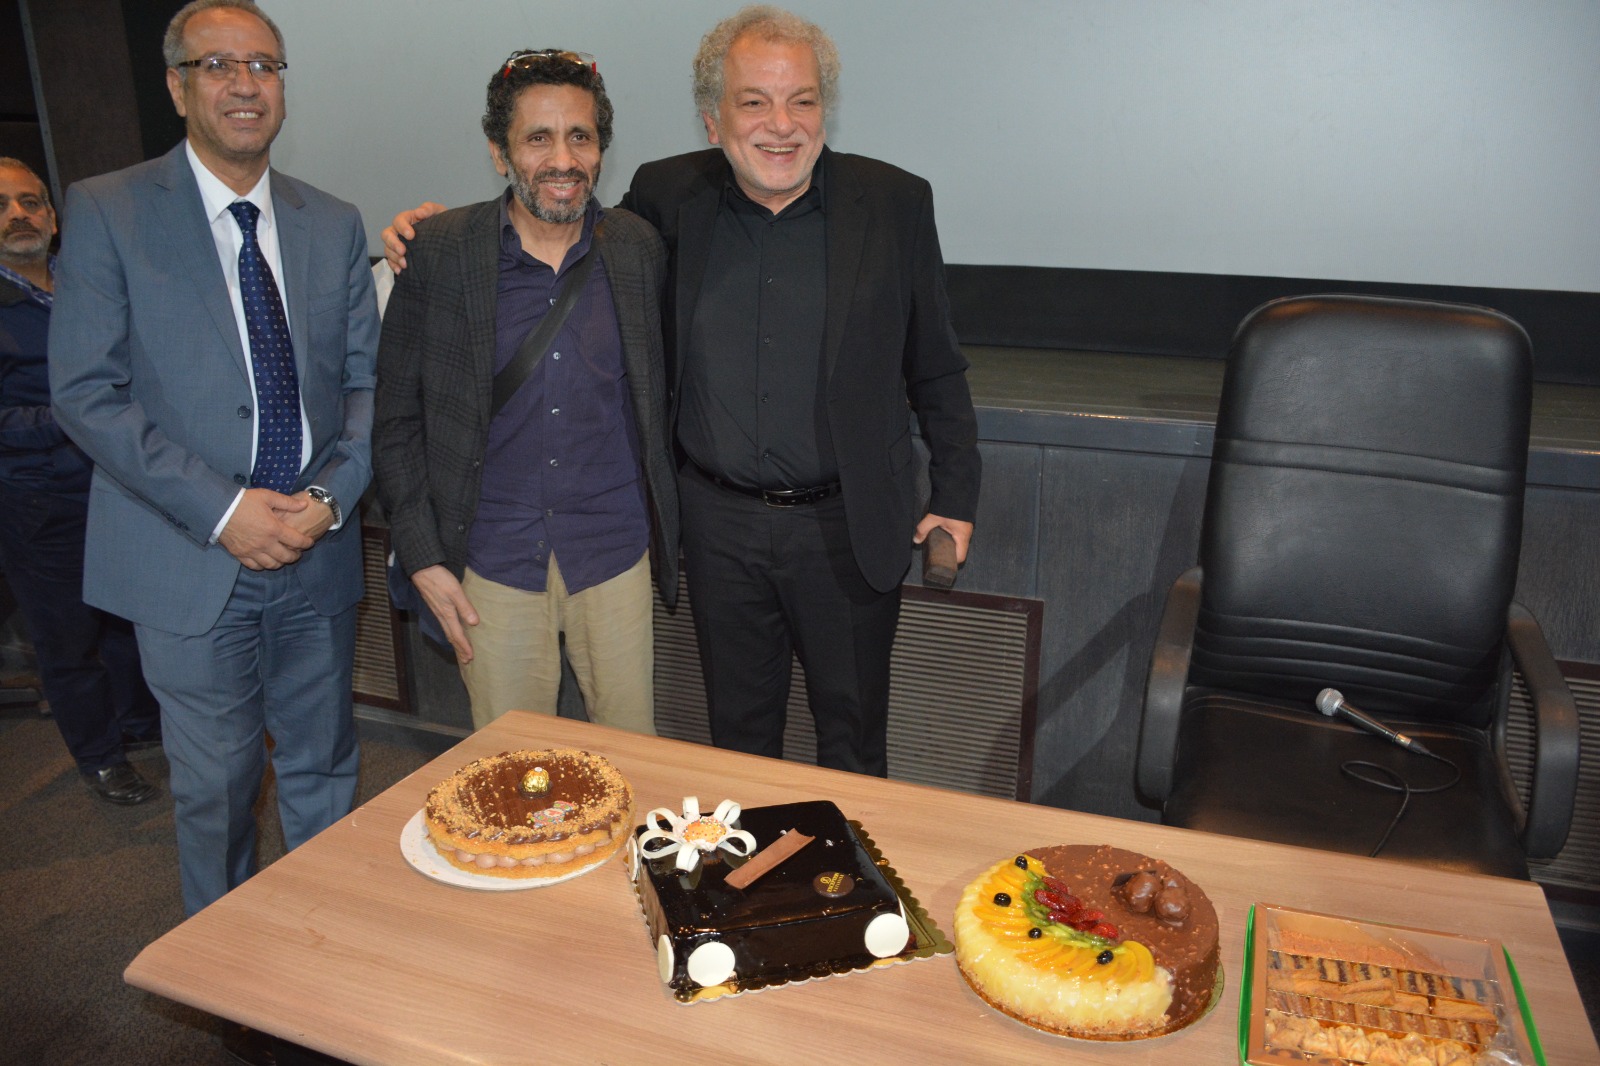 المخرج أشرف فايق يحتفل بعيد ميلاده وخروجه علي المعاش بحضور وزيرة الثقافة